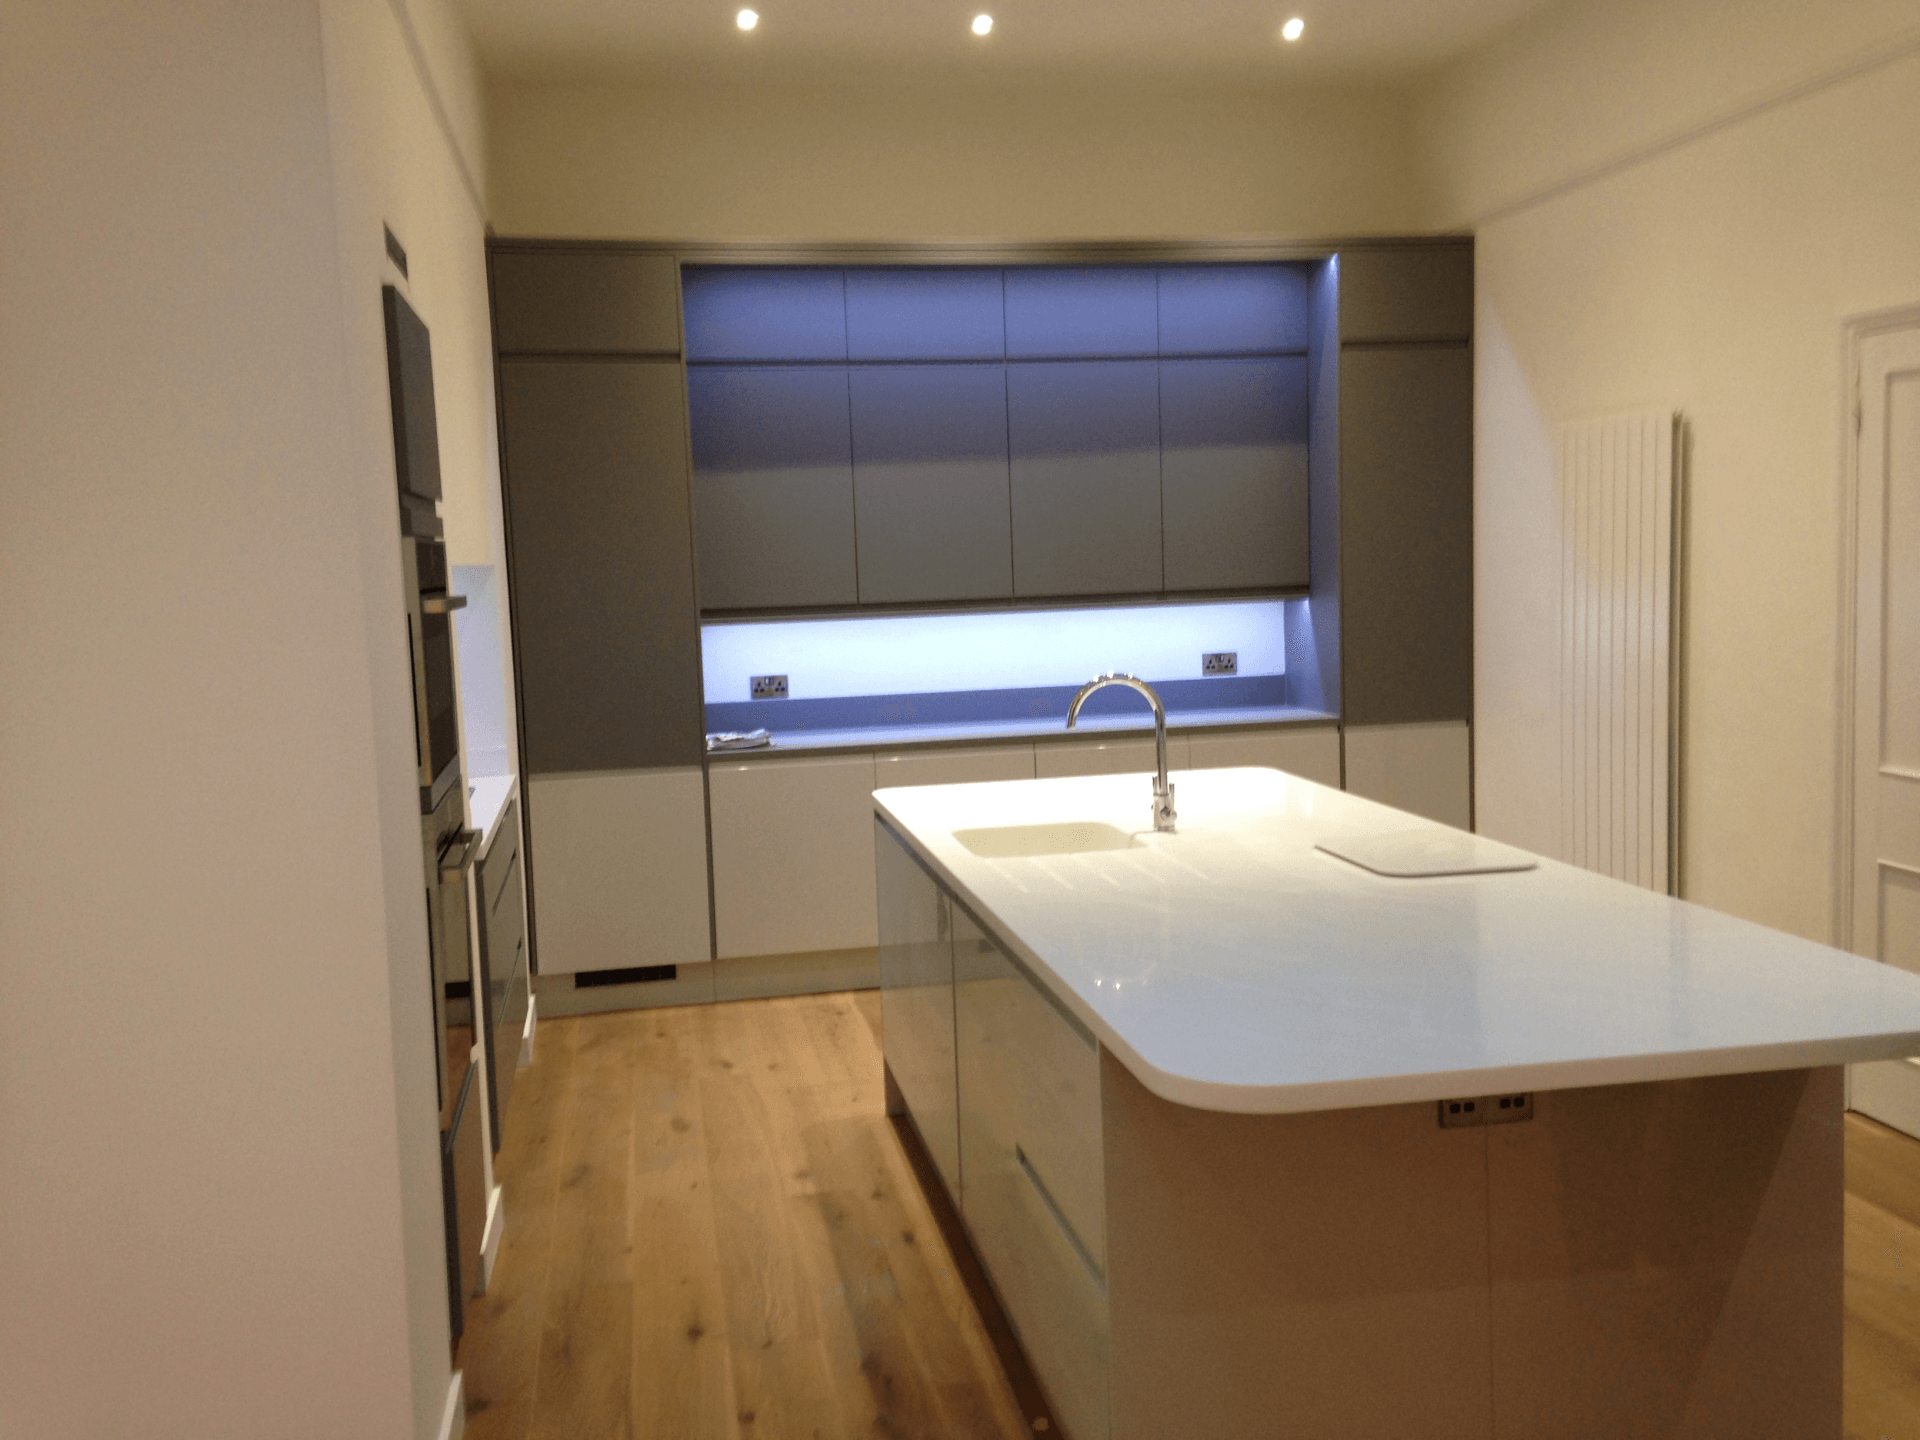 new kitchen installation by RTB construction in Cheltenham